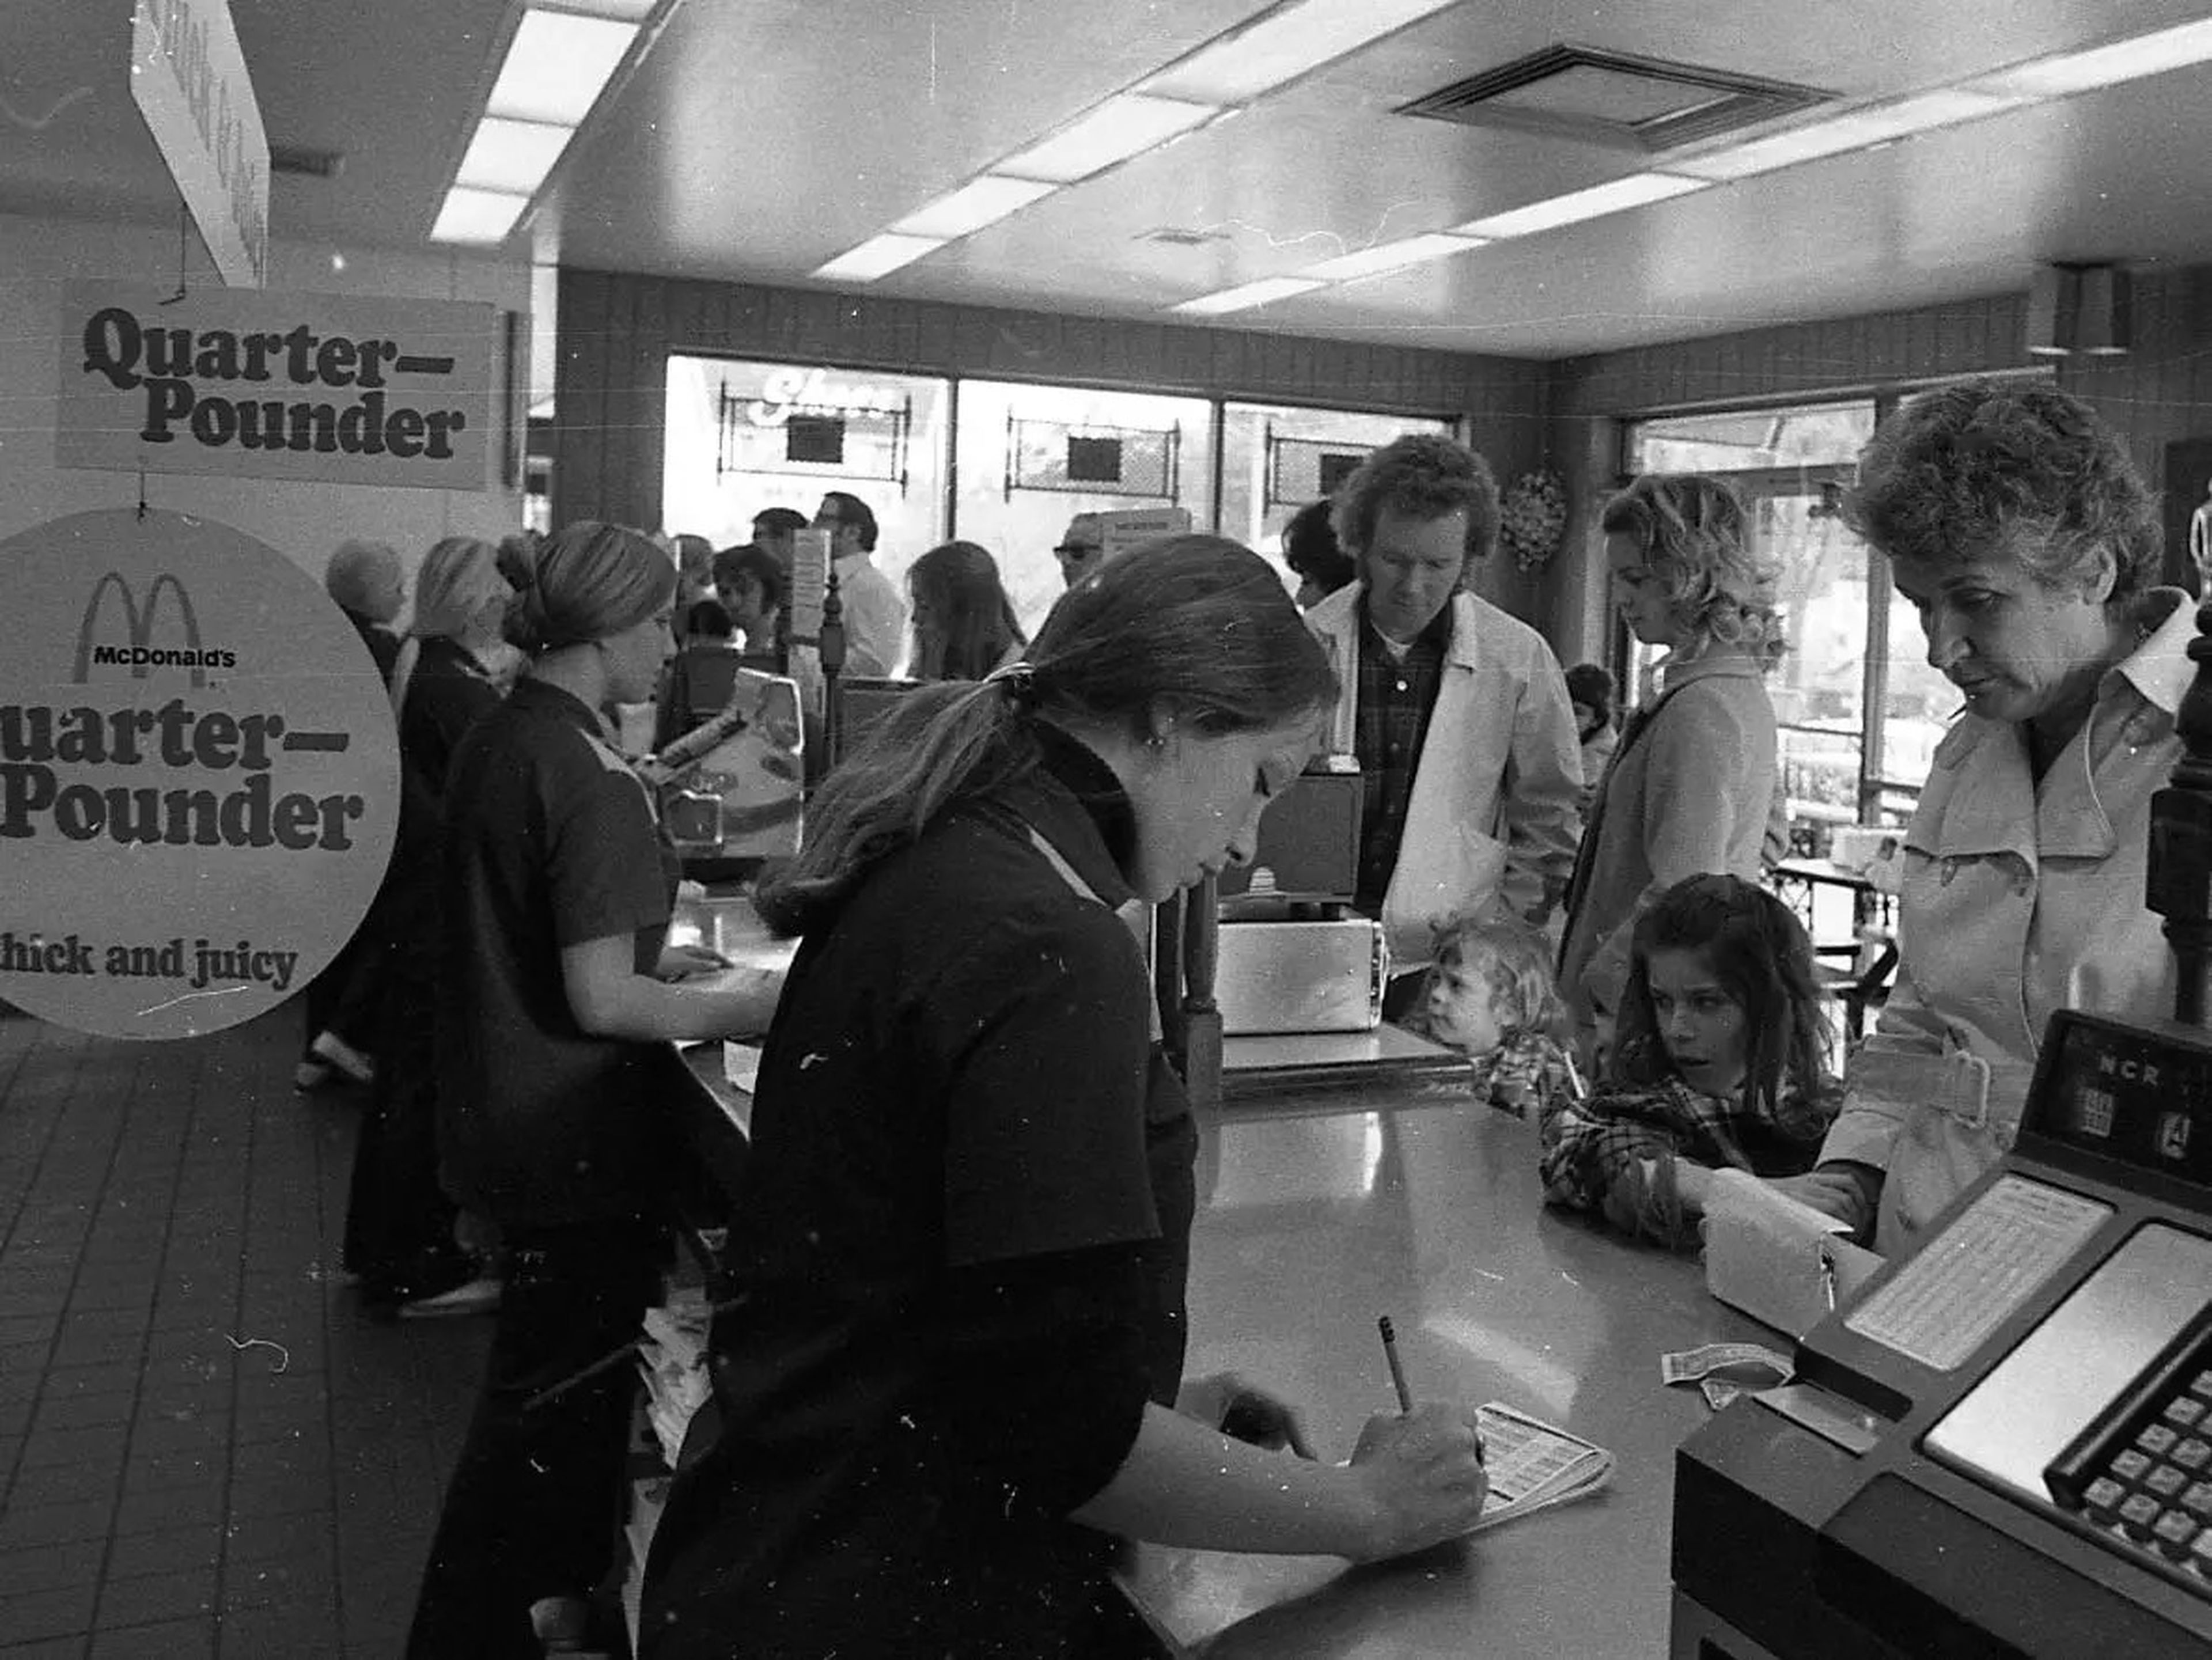 Trabajadoires de McDonald's atendiendo pedidos de los clientes en 1973.